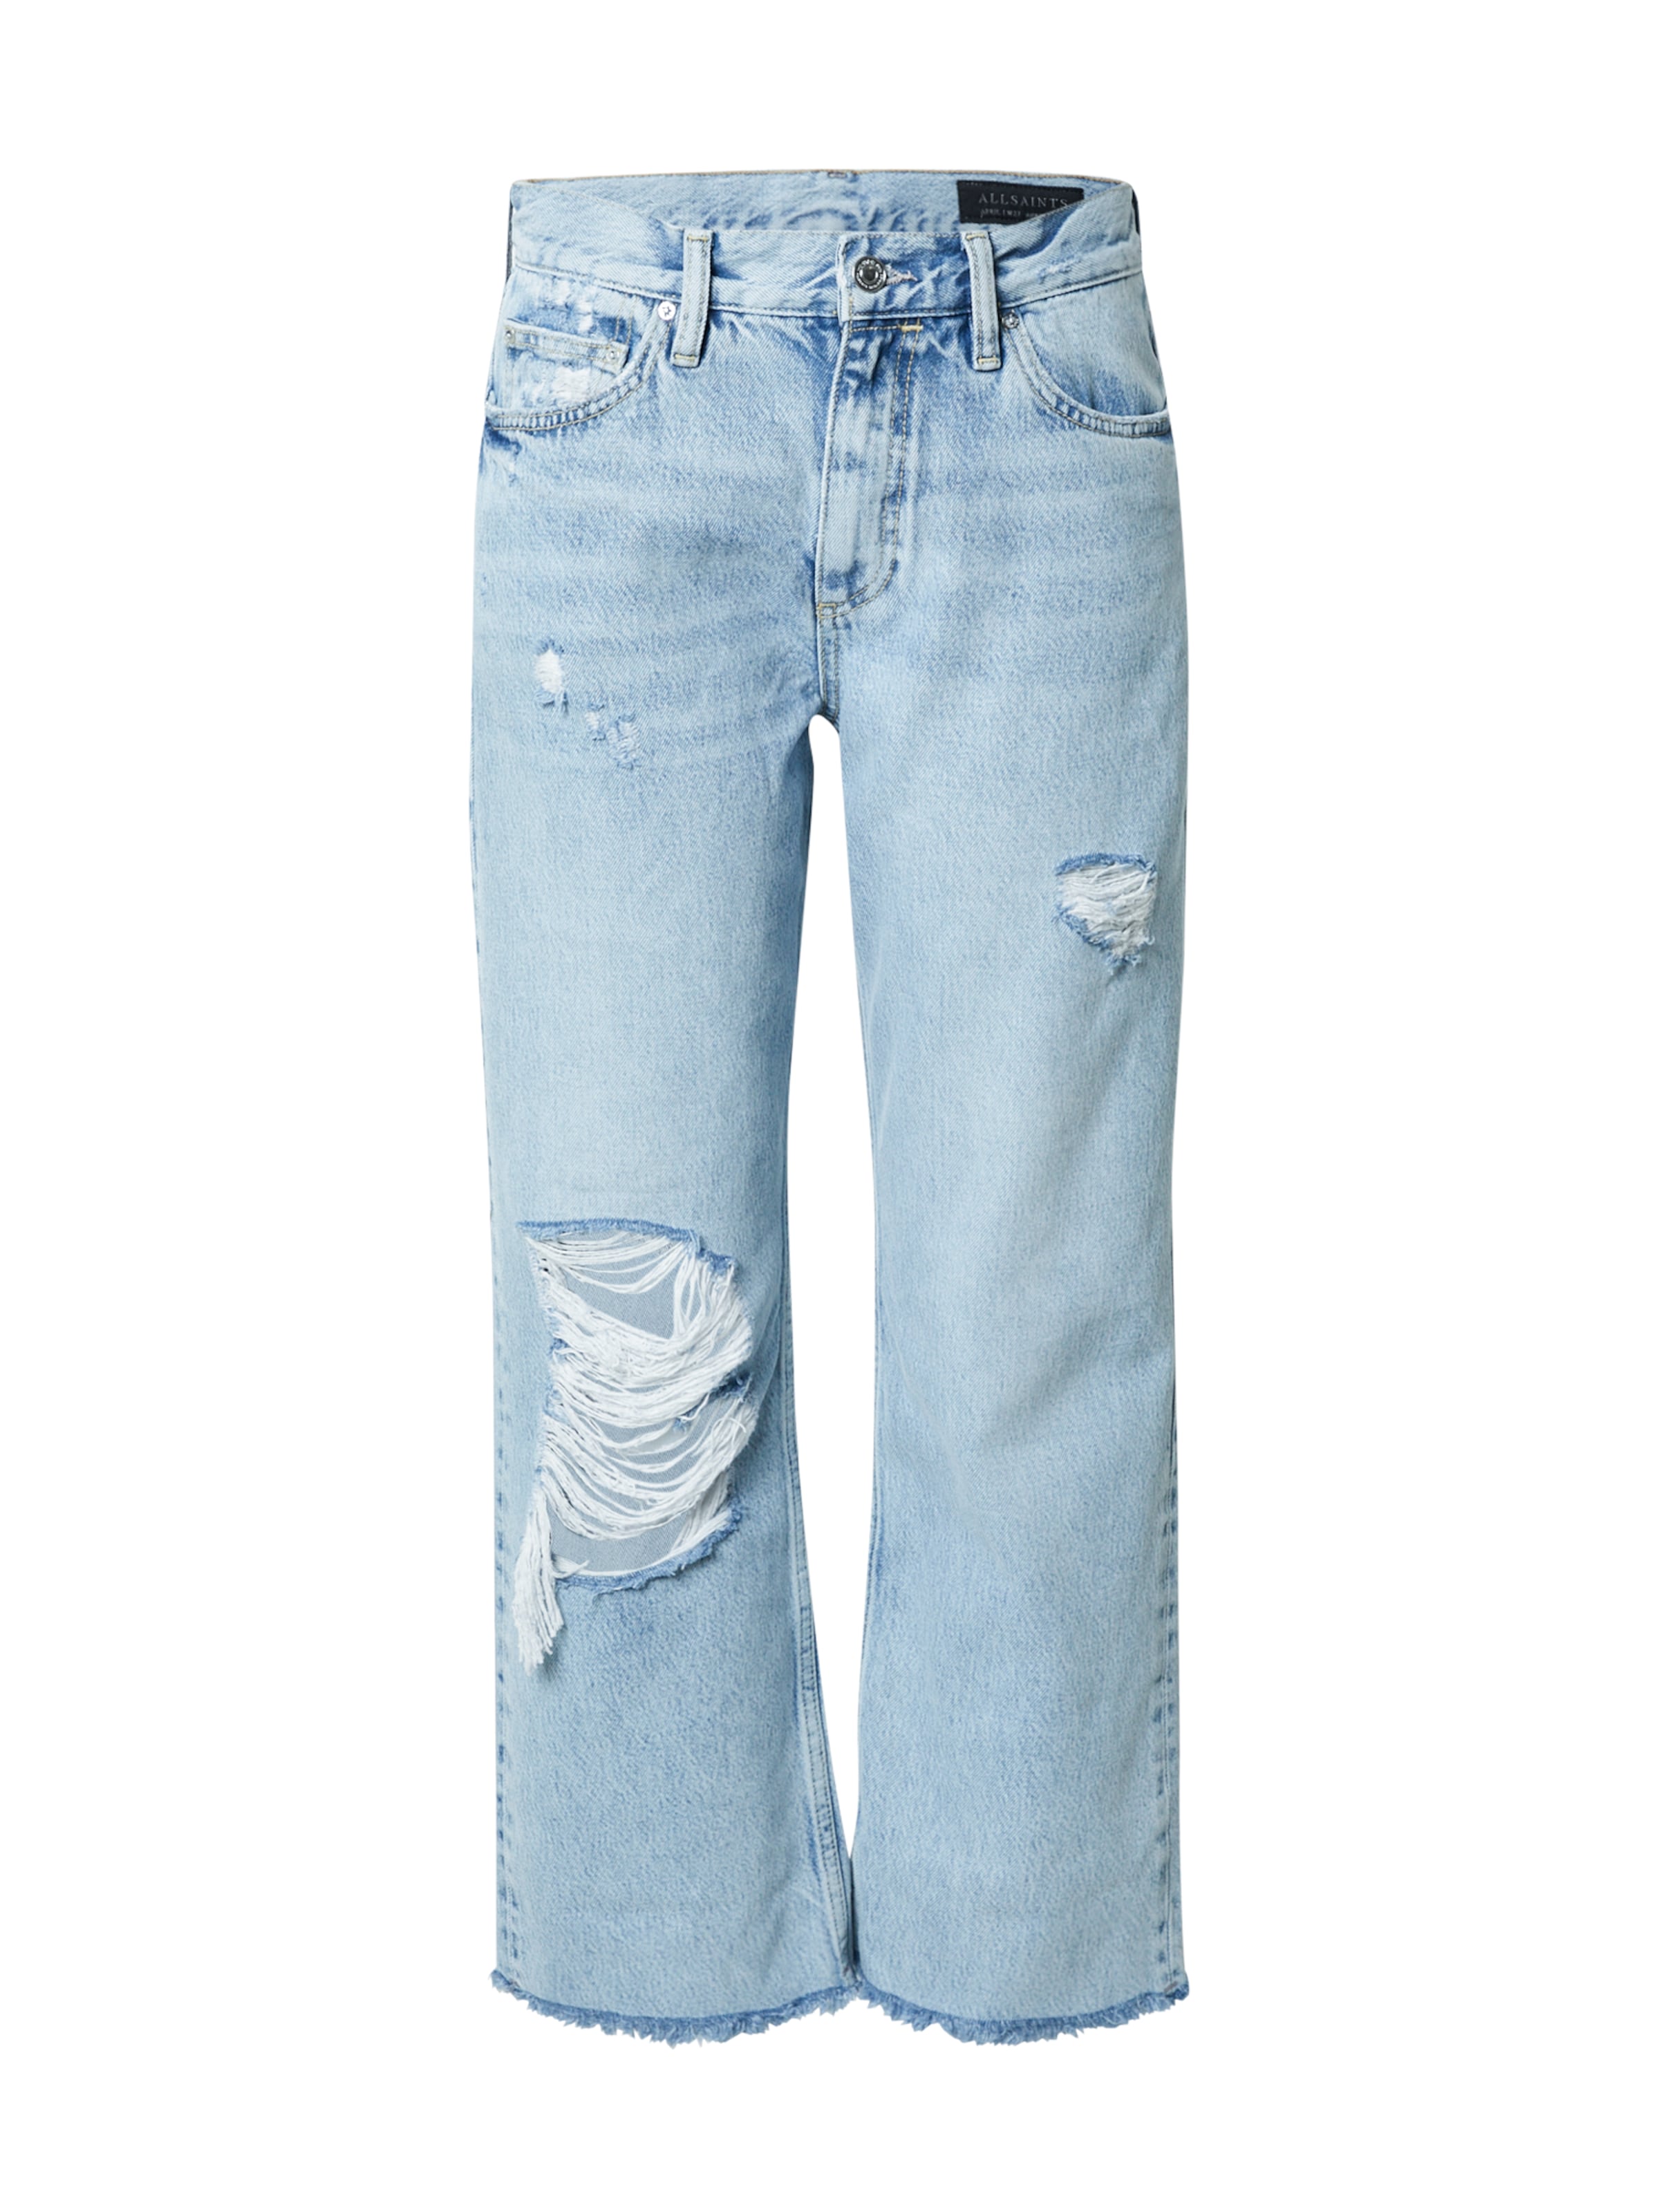 Abbigliamento Donna AllSaints Jeans April in Blu Chiaro 